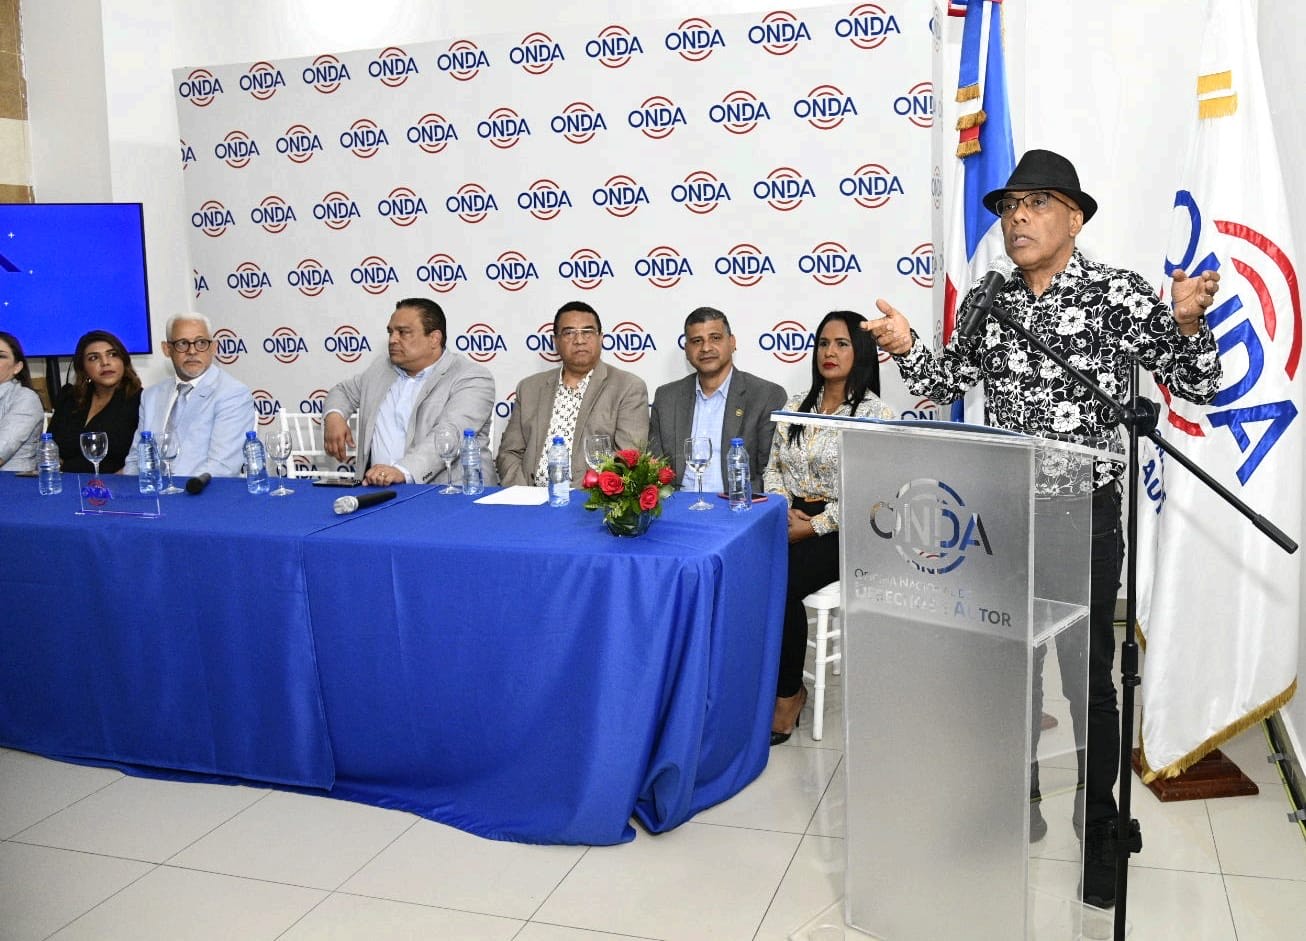 El anuncio de la gracia se hizo durante una rueda de prensa encabezada por el director general José Ruben Gonell Cosme y el presidente de SODAIE, Ramón Orlando Valoy